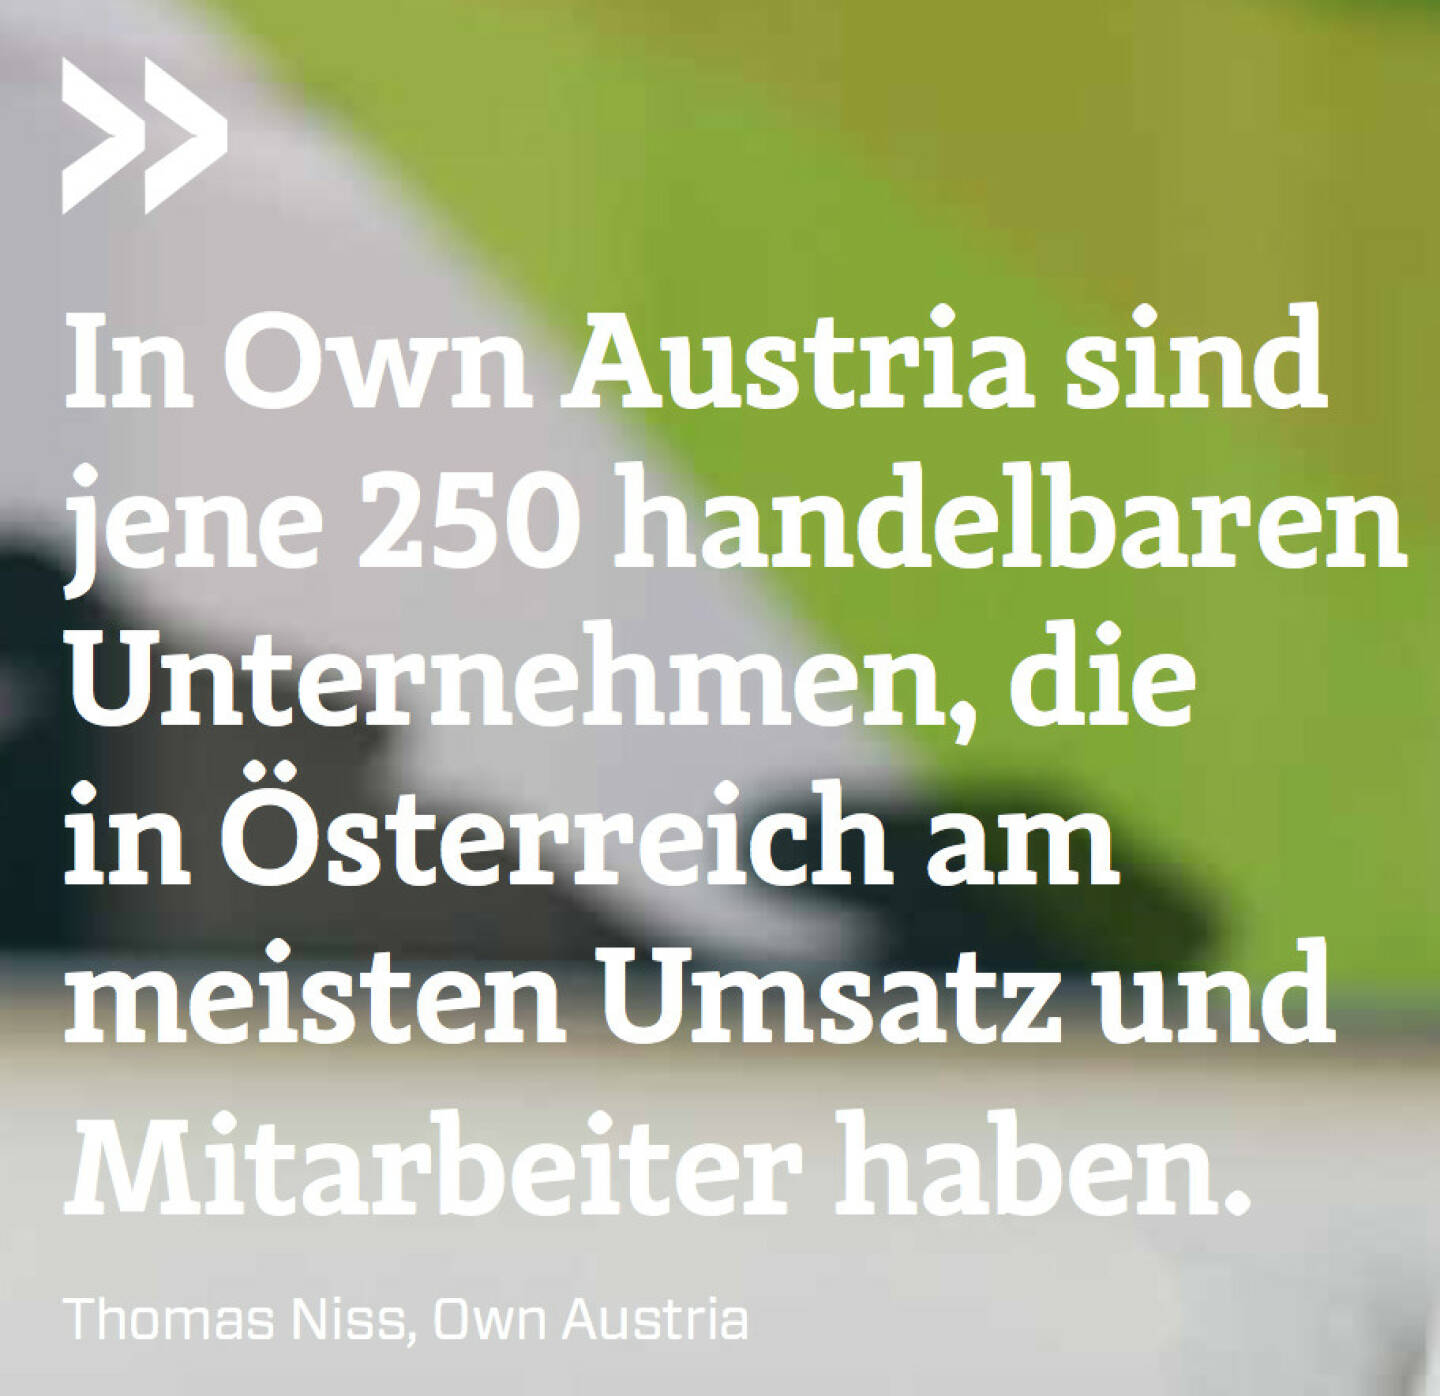 In Own Austria sind jene 250 handelbaren Unternehmen, die in Österreich am meisten Umsatz und Mitarbeiter haben. (Thomas Niss, Own Austria)